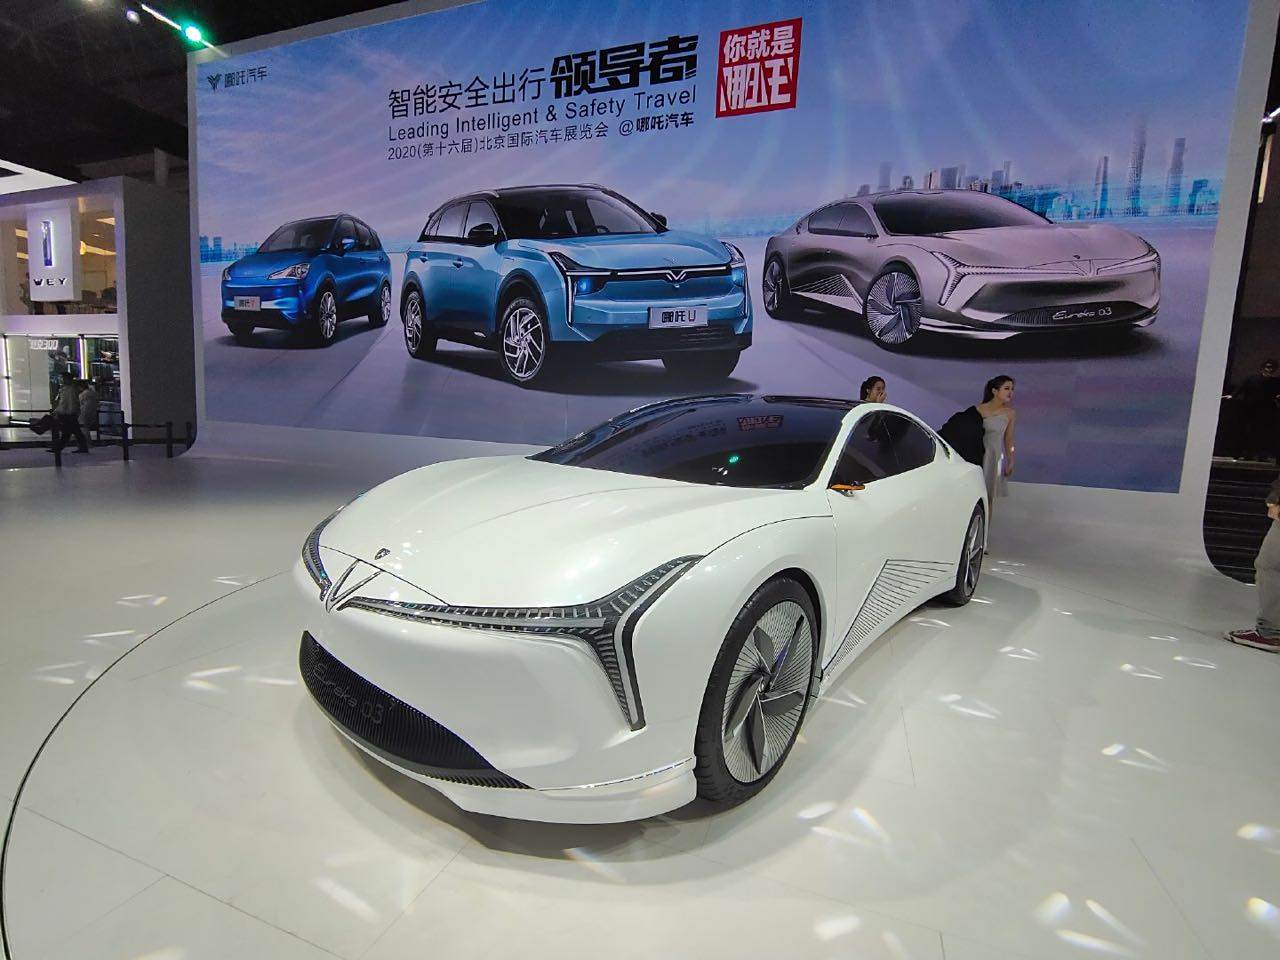 【图】新车不少,憋出来的北京车展好火,哪吒车